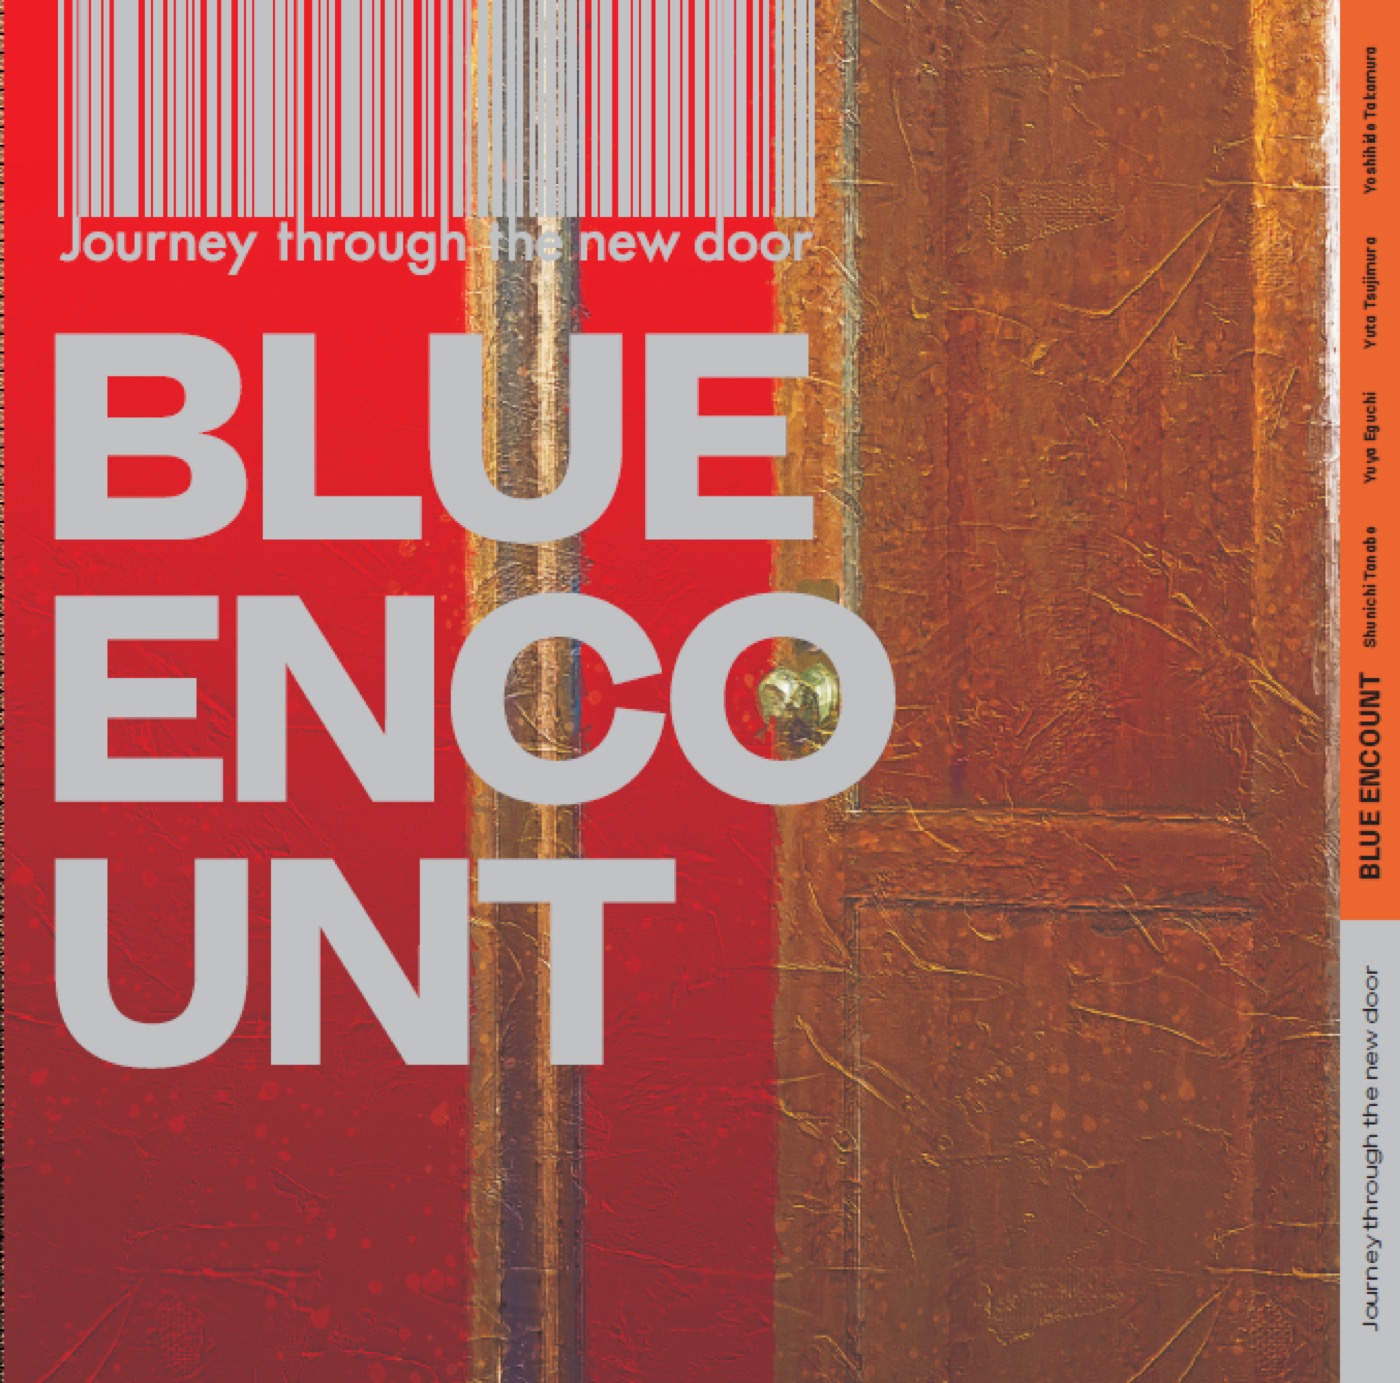 BLUE ENCOUNT、ミニアルバム『Journey through the new door』ジャケット写真を公開